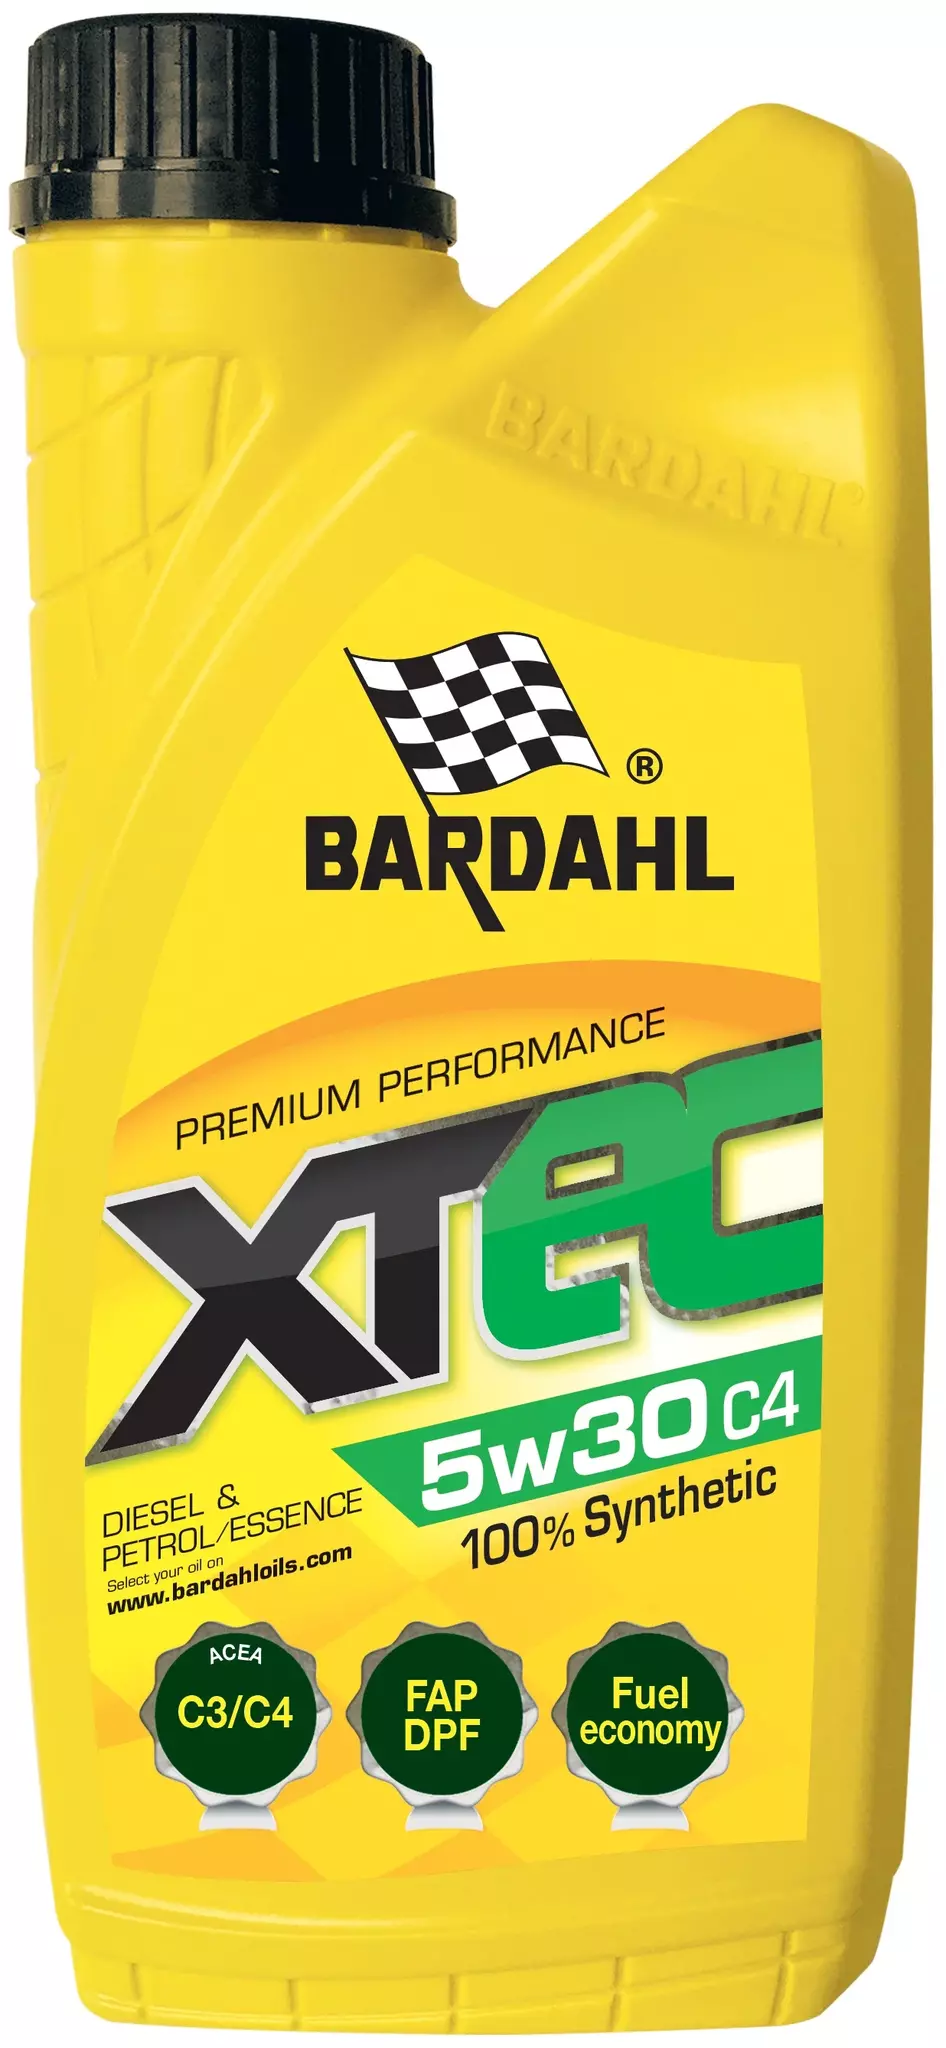 Синтетическое моторное масло Bardahl XTEC 5W-30 C4, 1 л